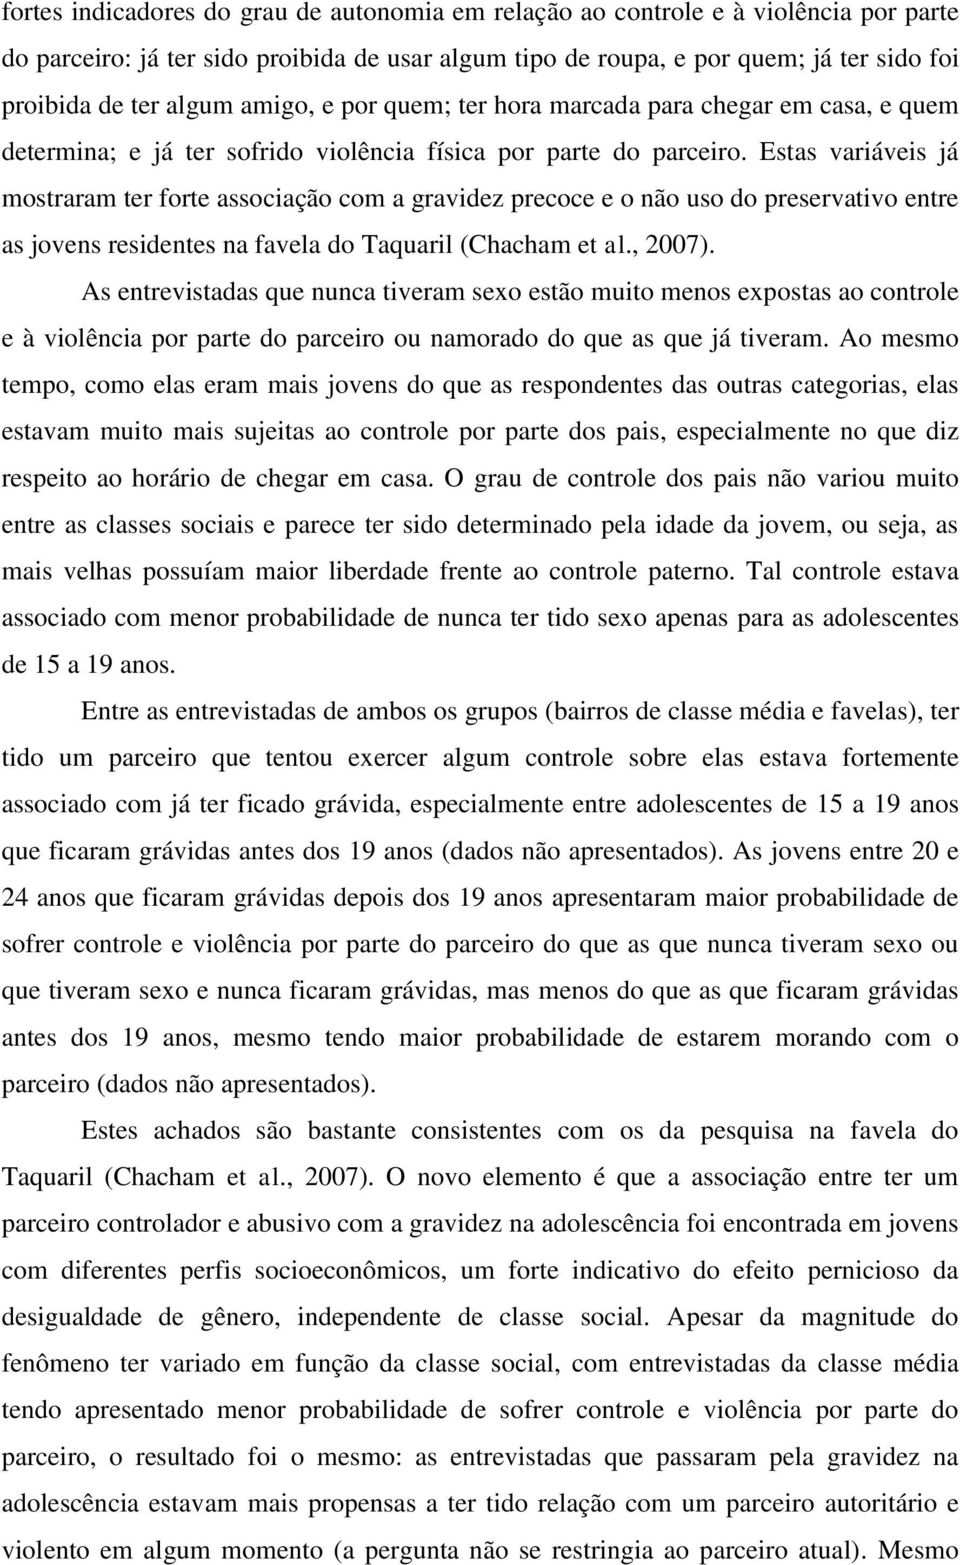 Estas variáveis já mostraram ter forte associação com a gravidez precoce e o não uso do preservativo entre as jovens residentes na favela do Taquaril (Chacham et al., 2007).